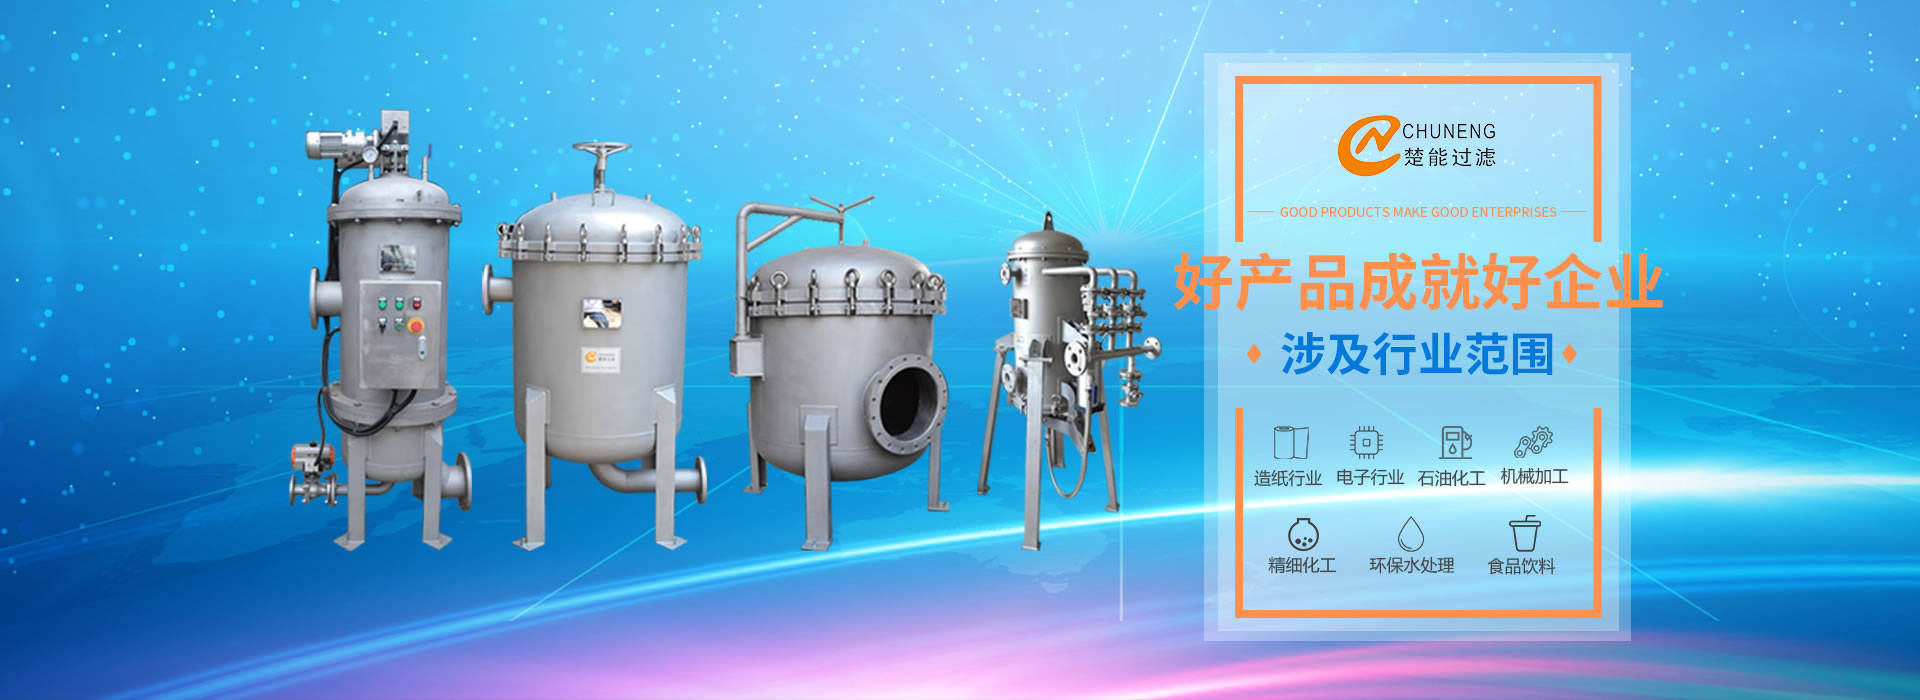 上海楚能工業過濾系統有限公司是集研發、制造、銷售/服務于一體的過濾設備與過濾元件專業生產廠家